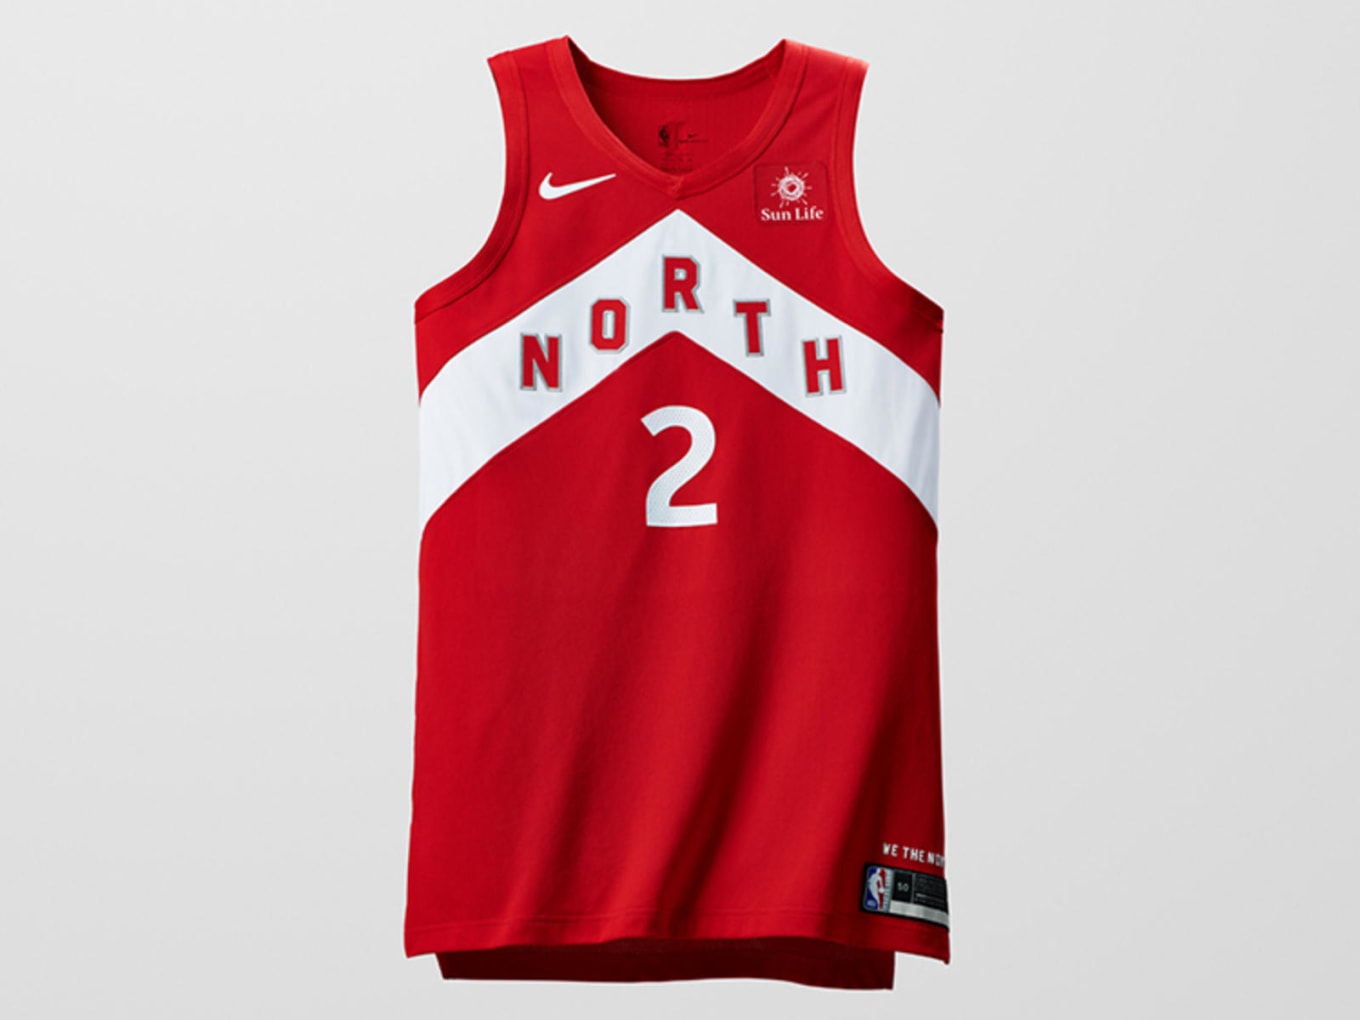 Nike Debuts Earned Edition NBA Uniforms 